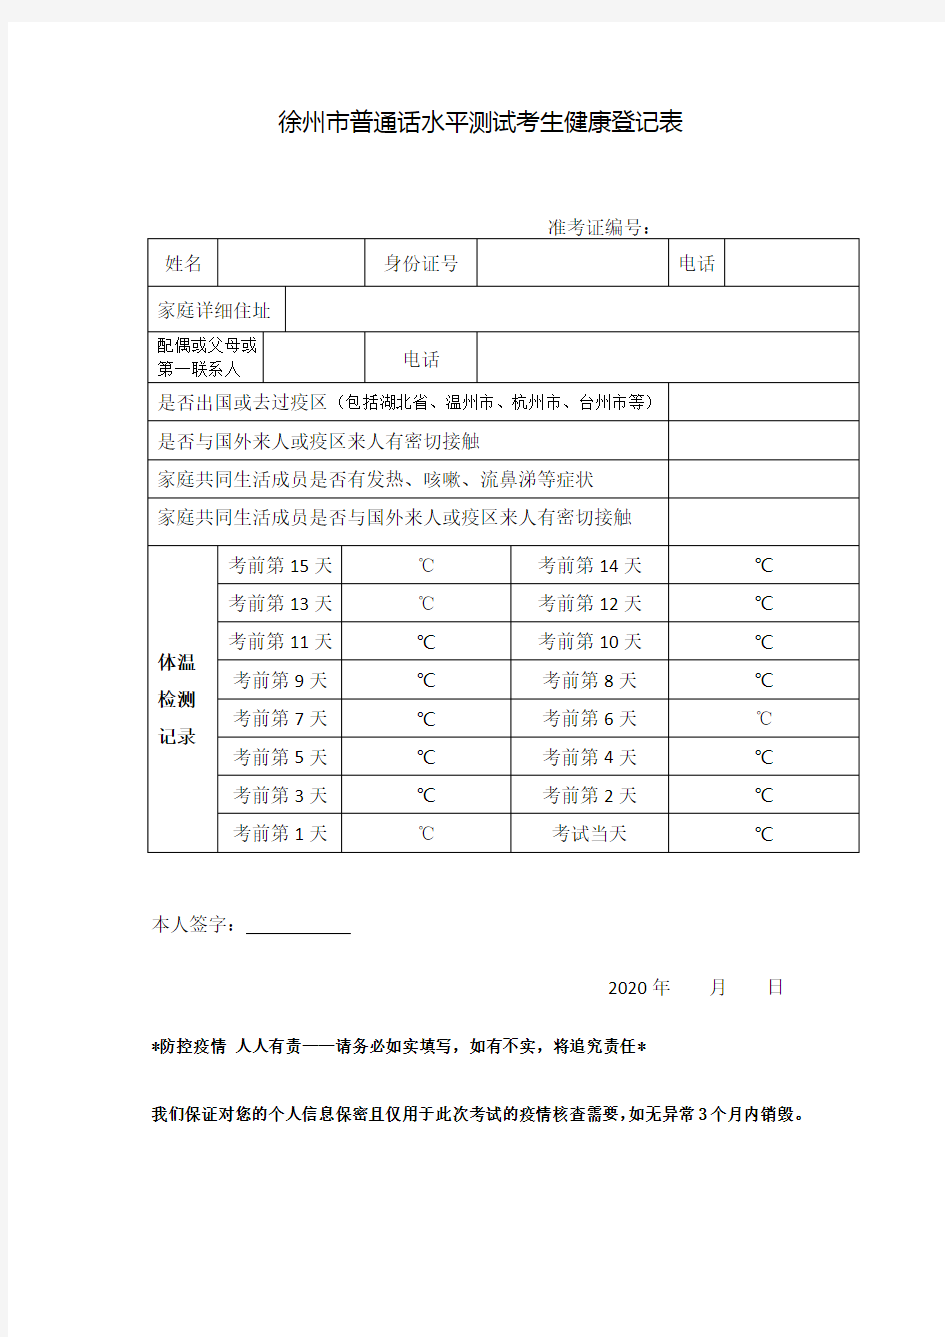 徐州市普通话水平测试考生健康登记表